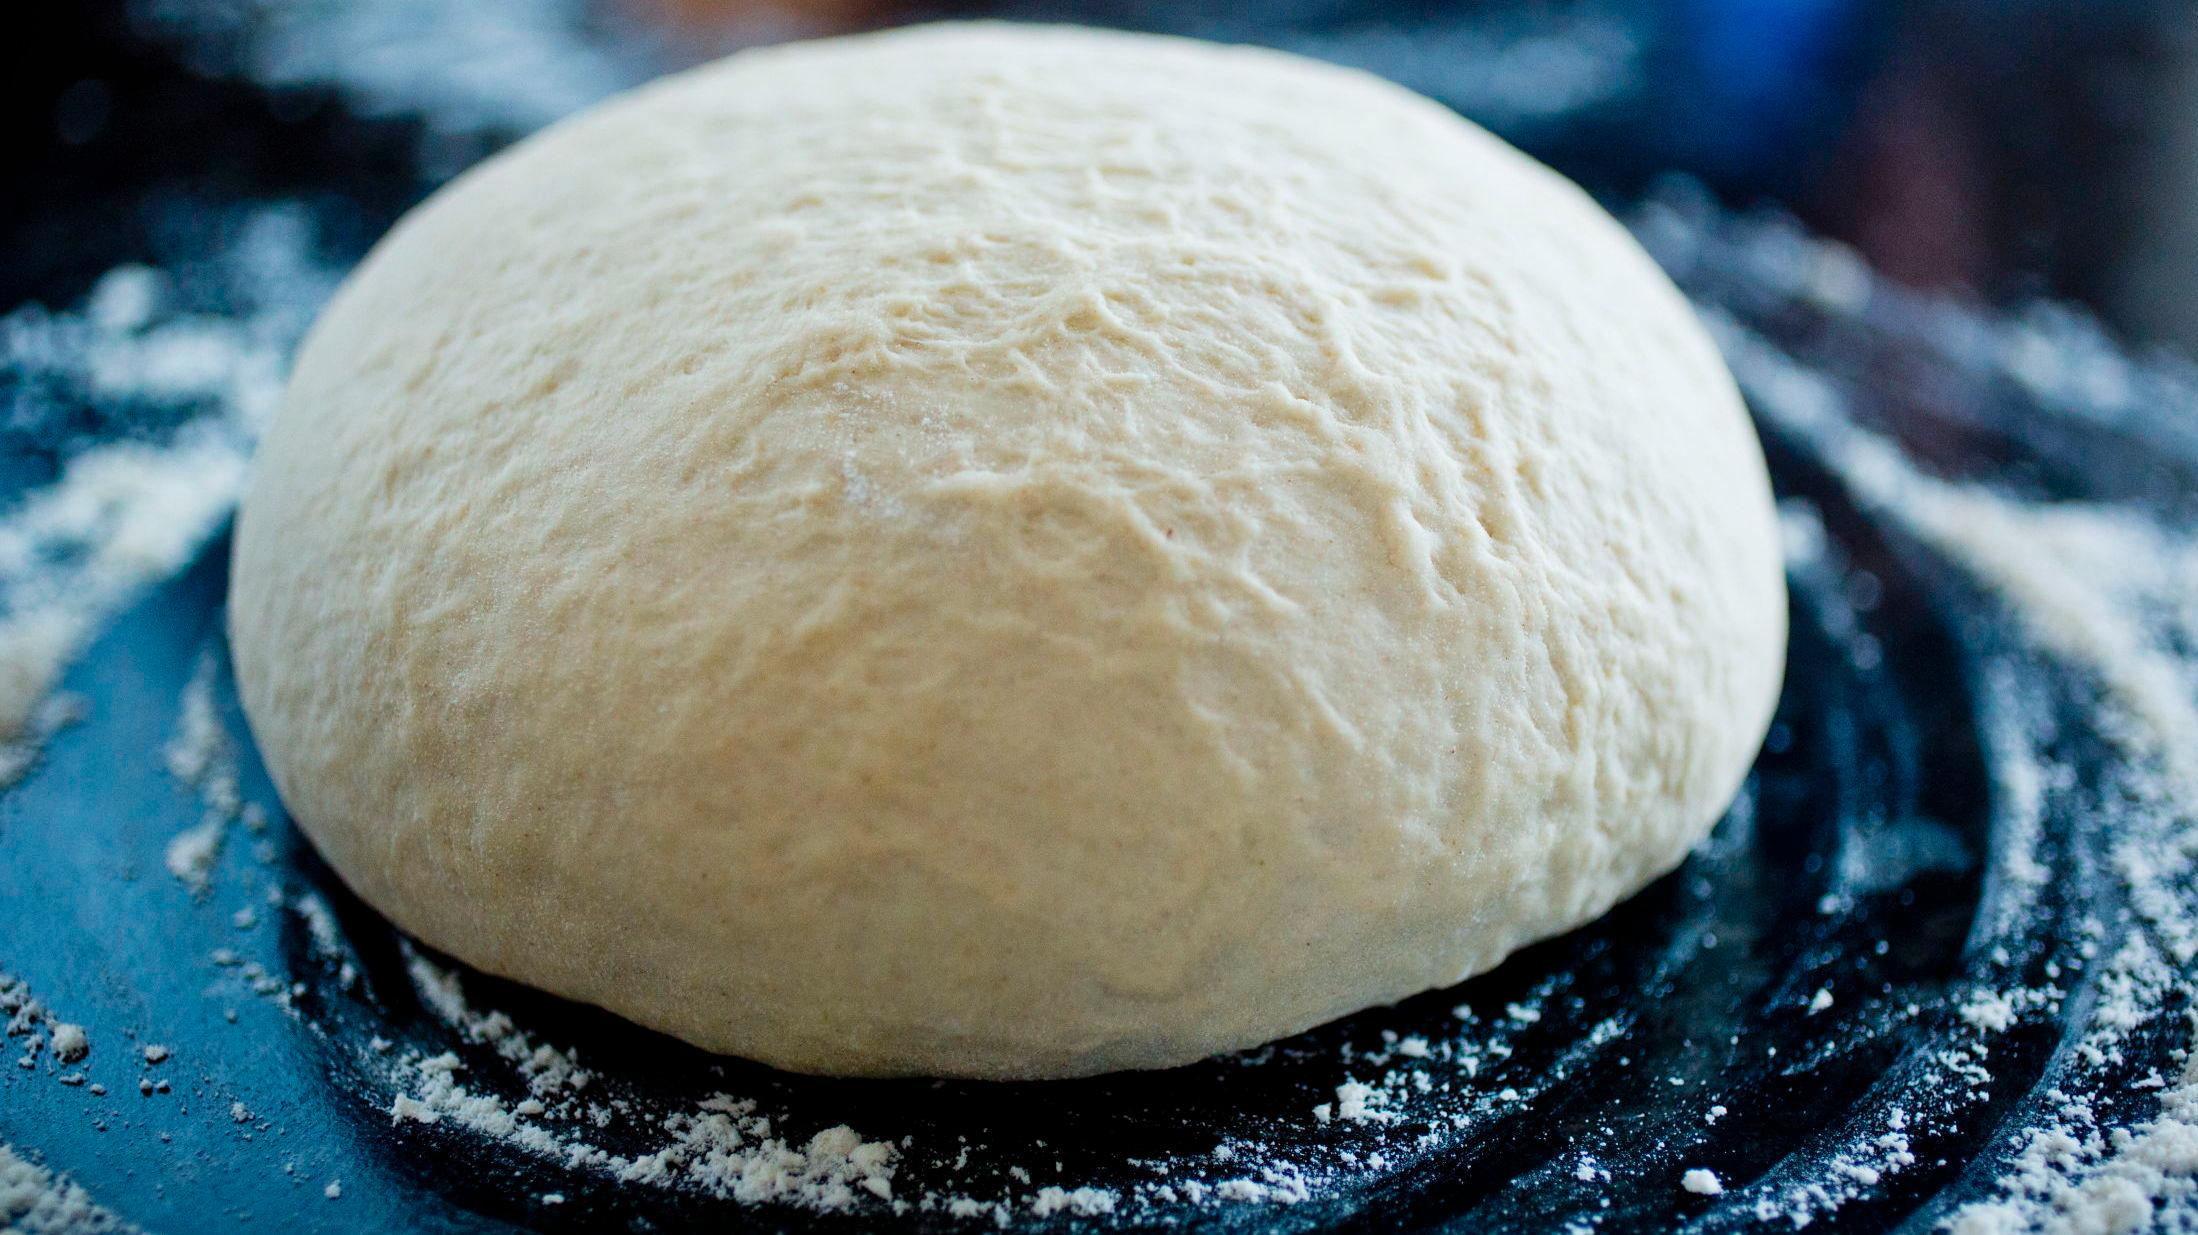 GODT FORBEREDT: Pizzadeig kan fint oppbevares i fryseren, for å gjøre middagsforberedelsene enklere.  Foto: Sara Johannessen/VG.